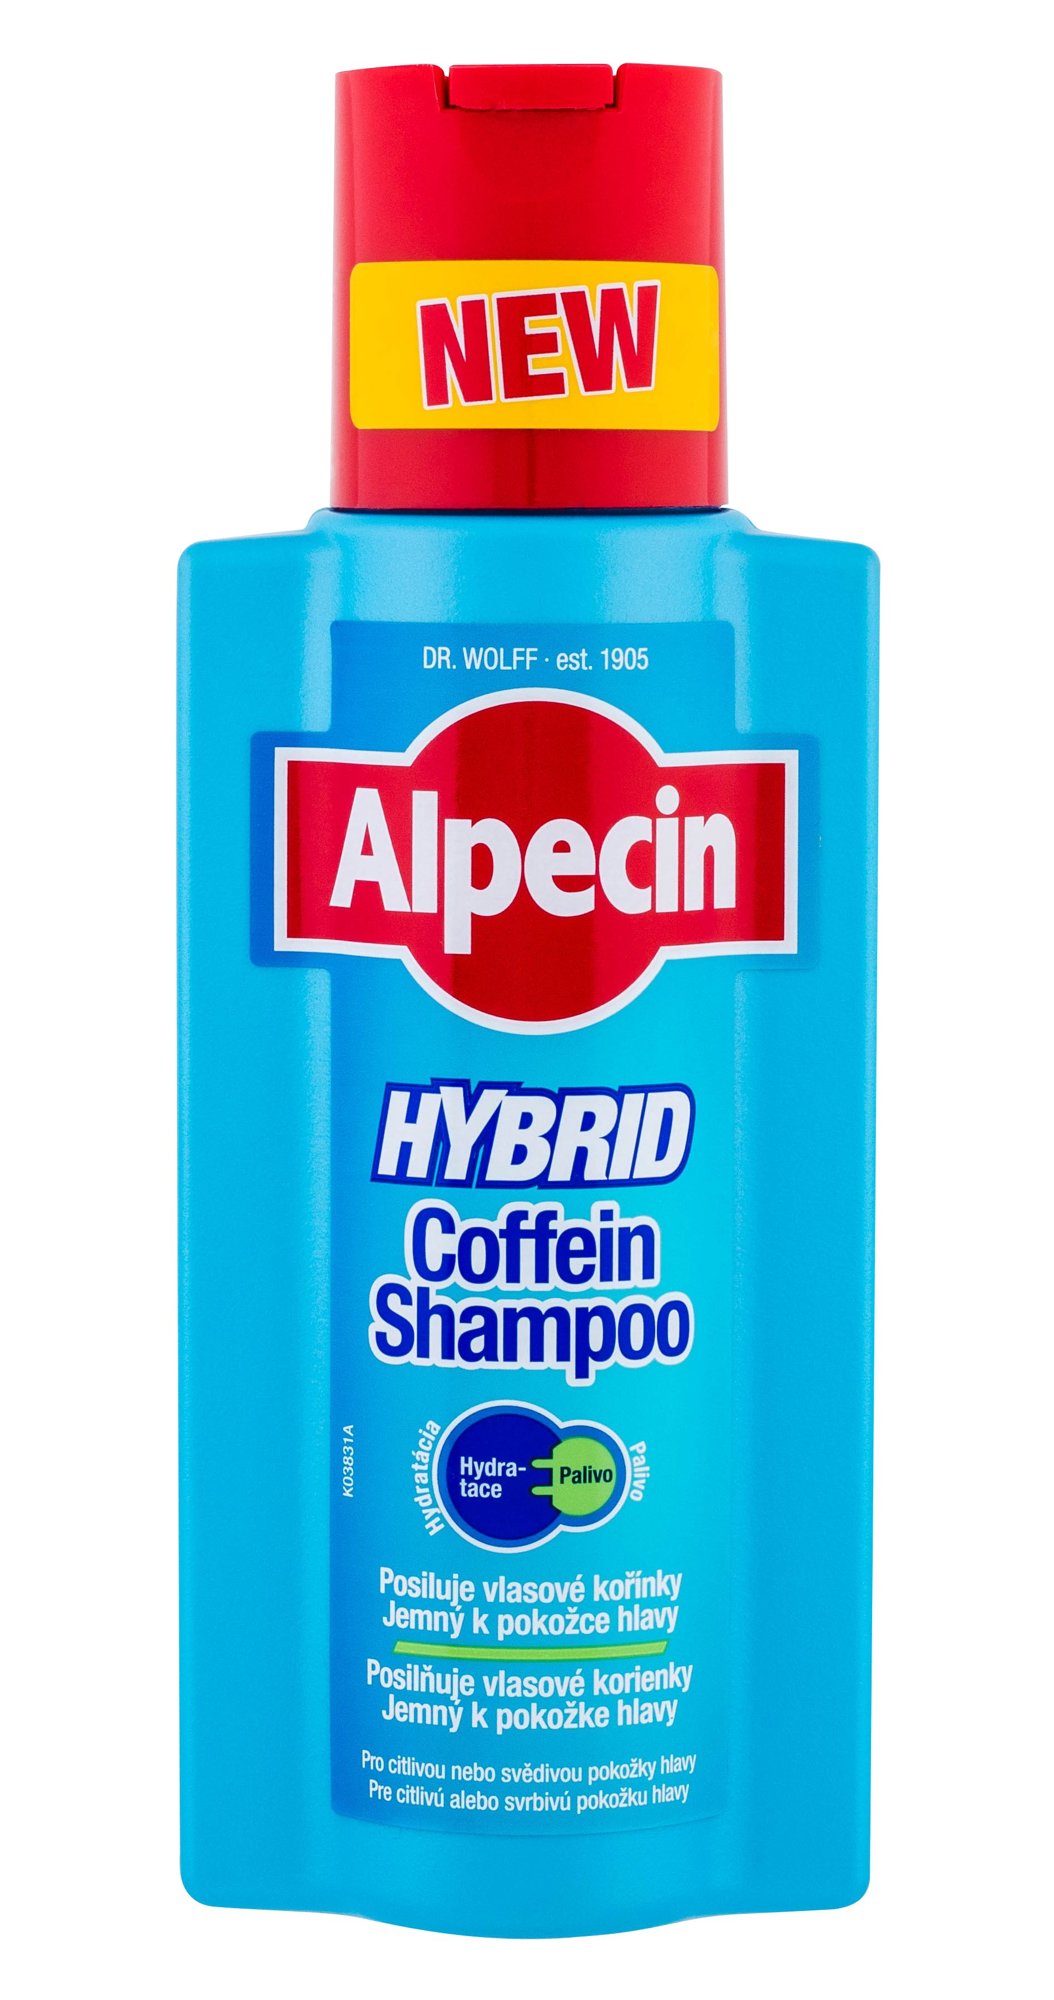 Alpecin Hybrid Coffein Shampoo 250ml šampūnas